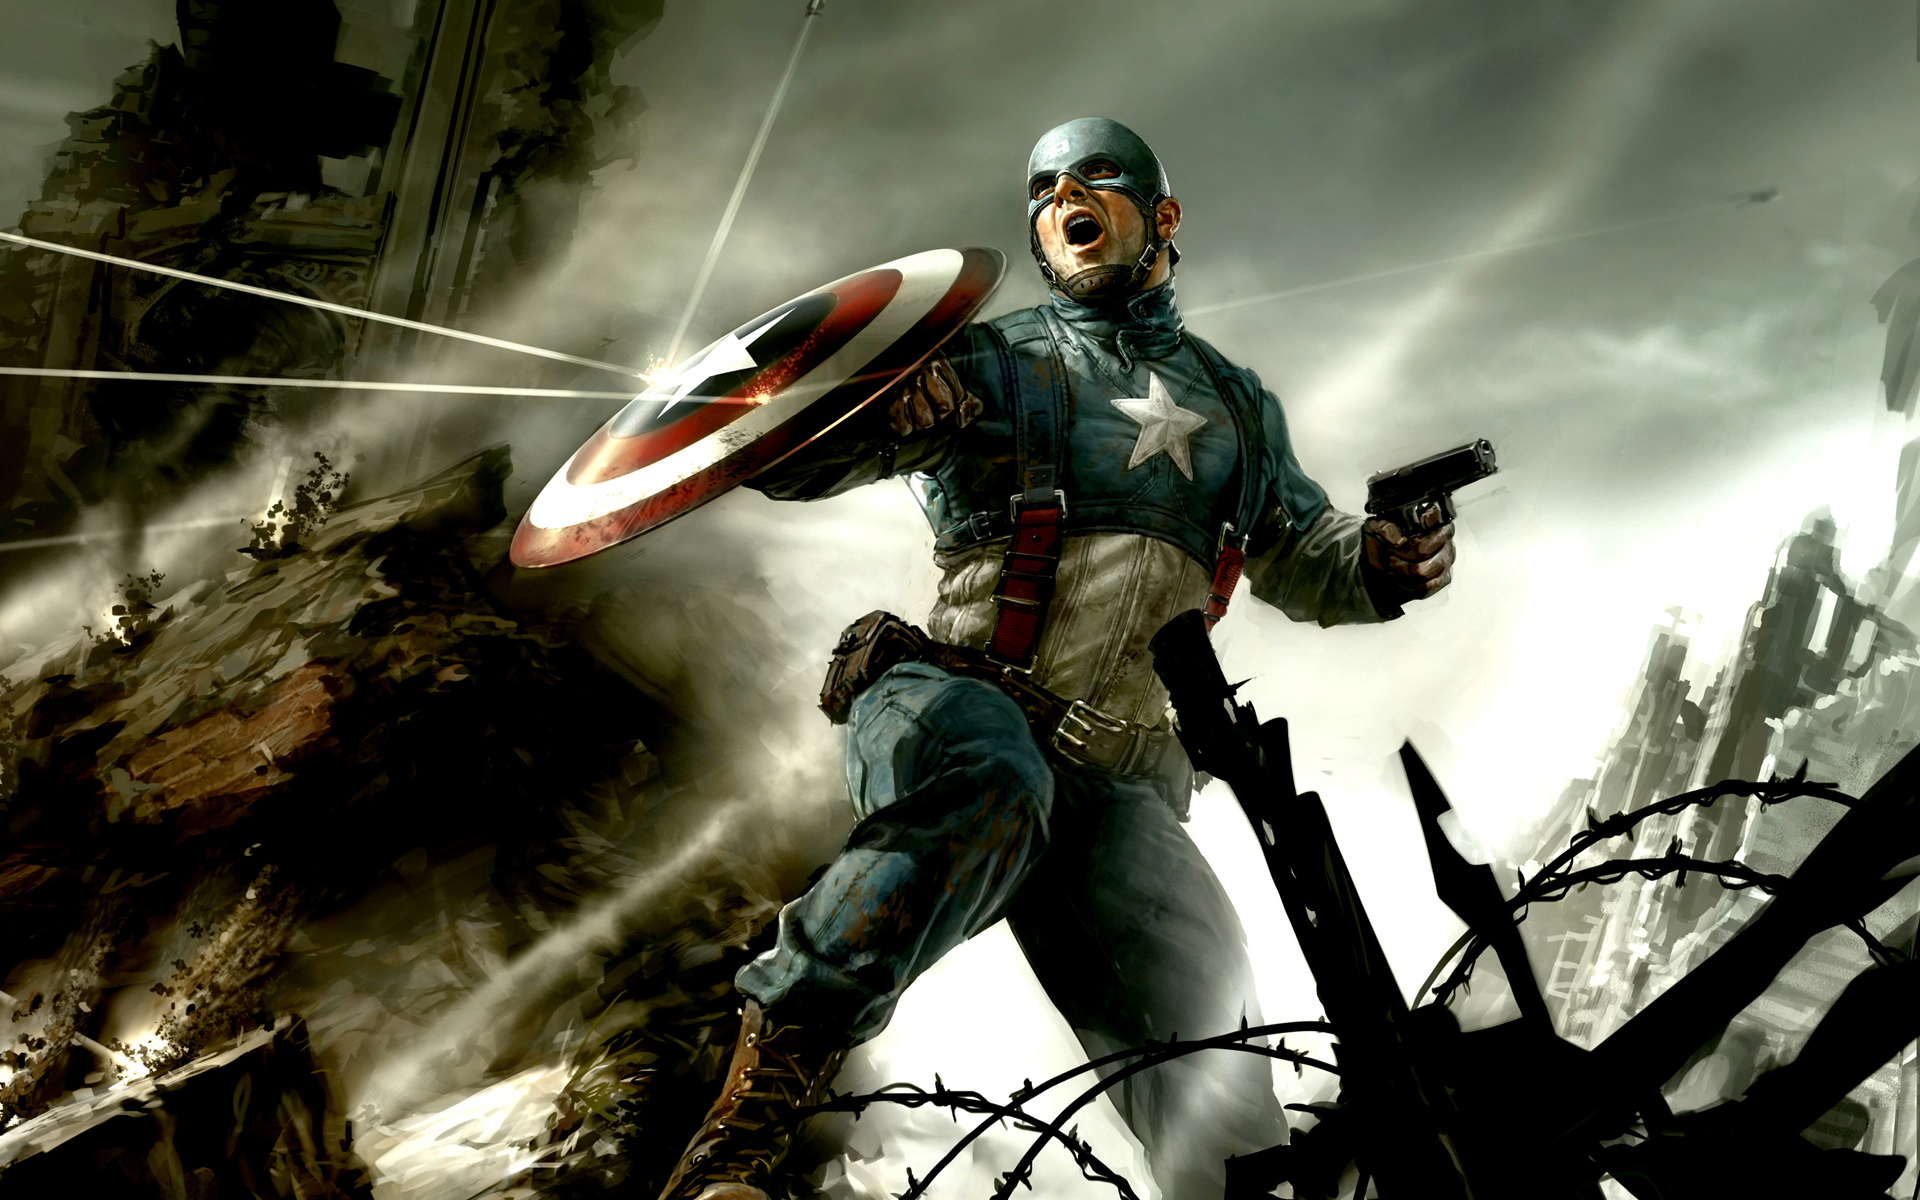 캡틴 아메리카 hd 배경 화면 다운로드,액션 어드벤처 게임,pc 게임,소설 속의 인물,cg 삽화,계략